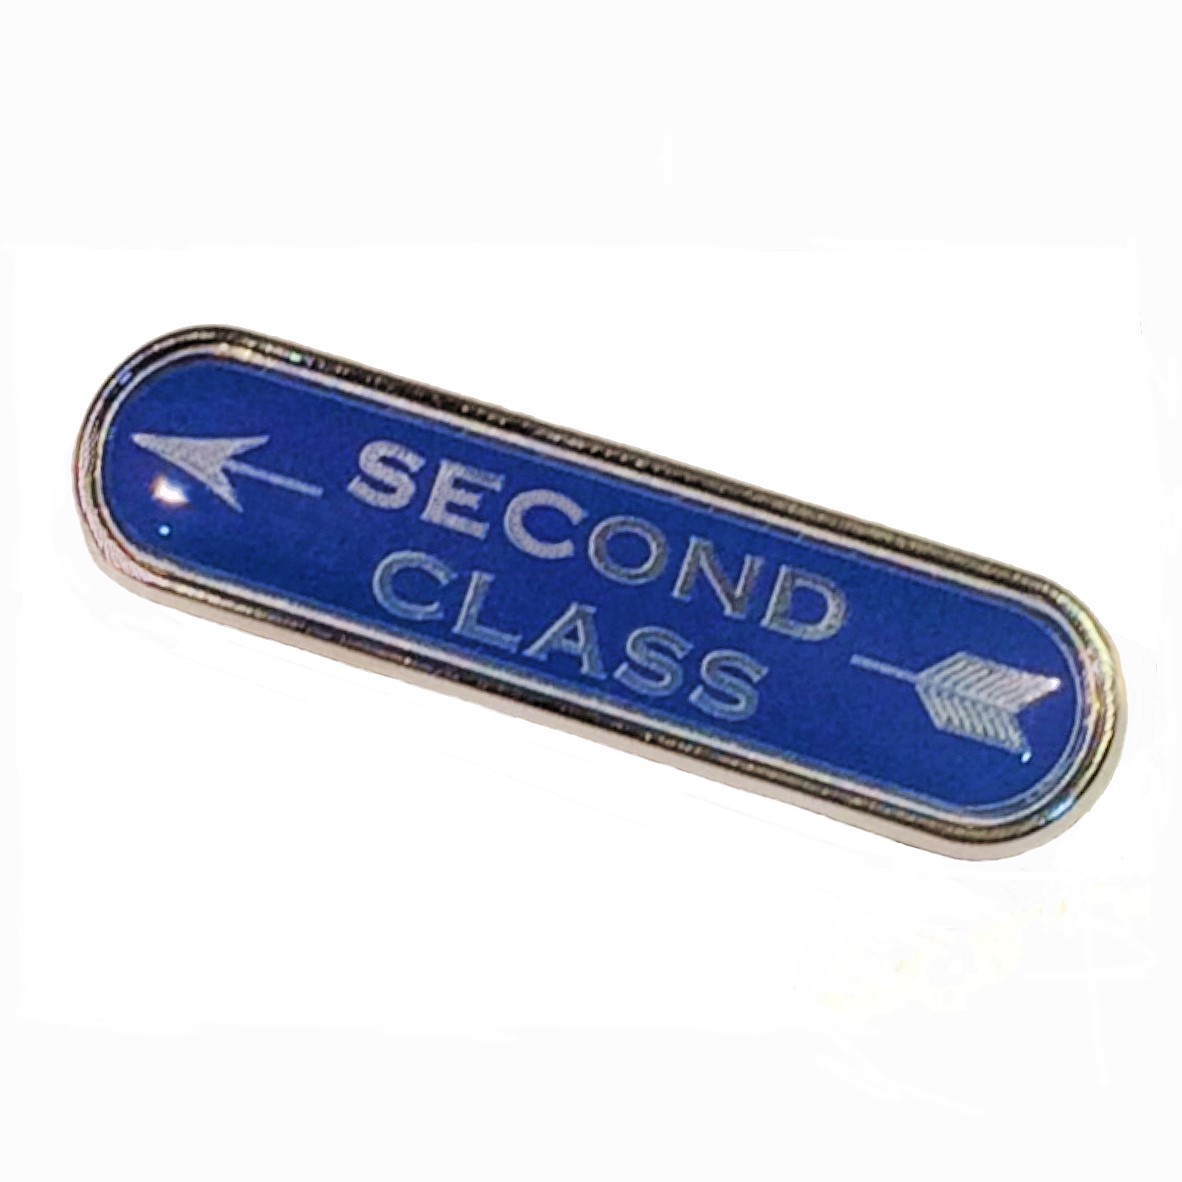 Class premium bar badge